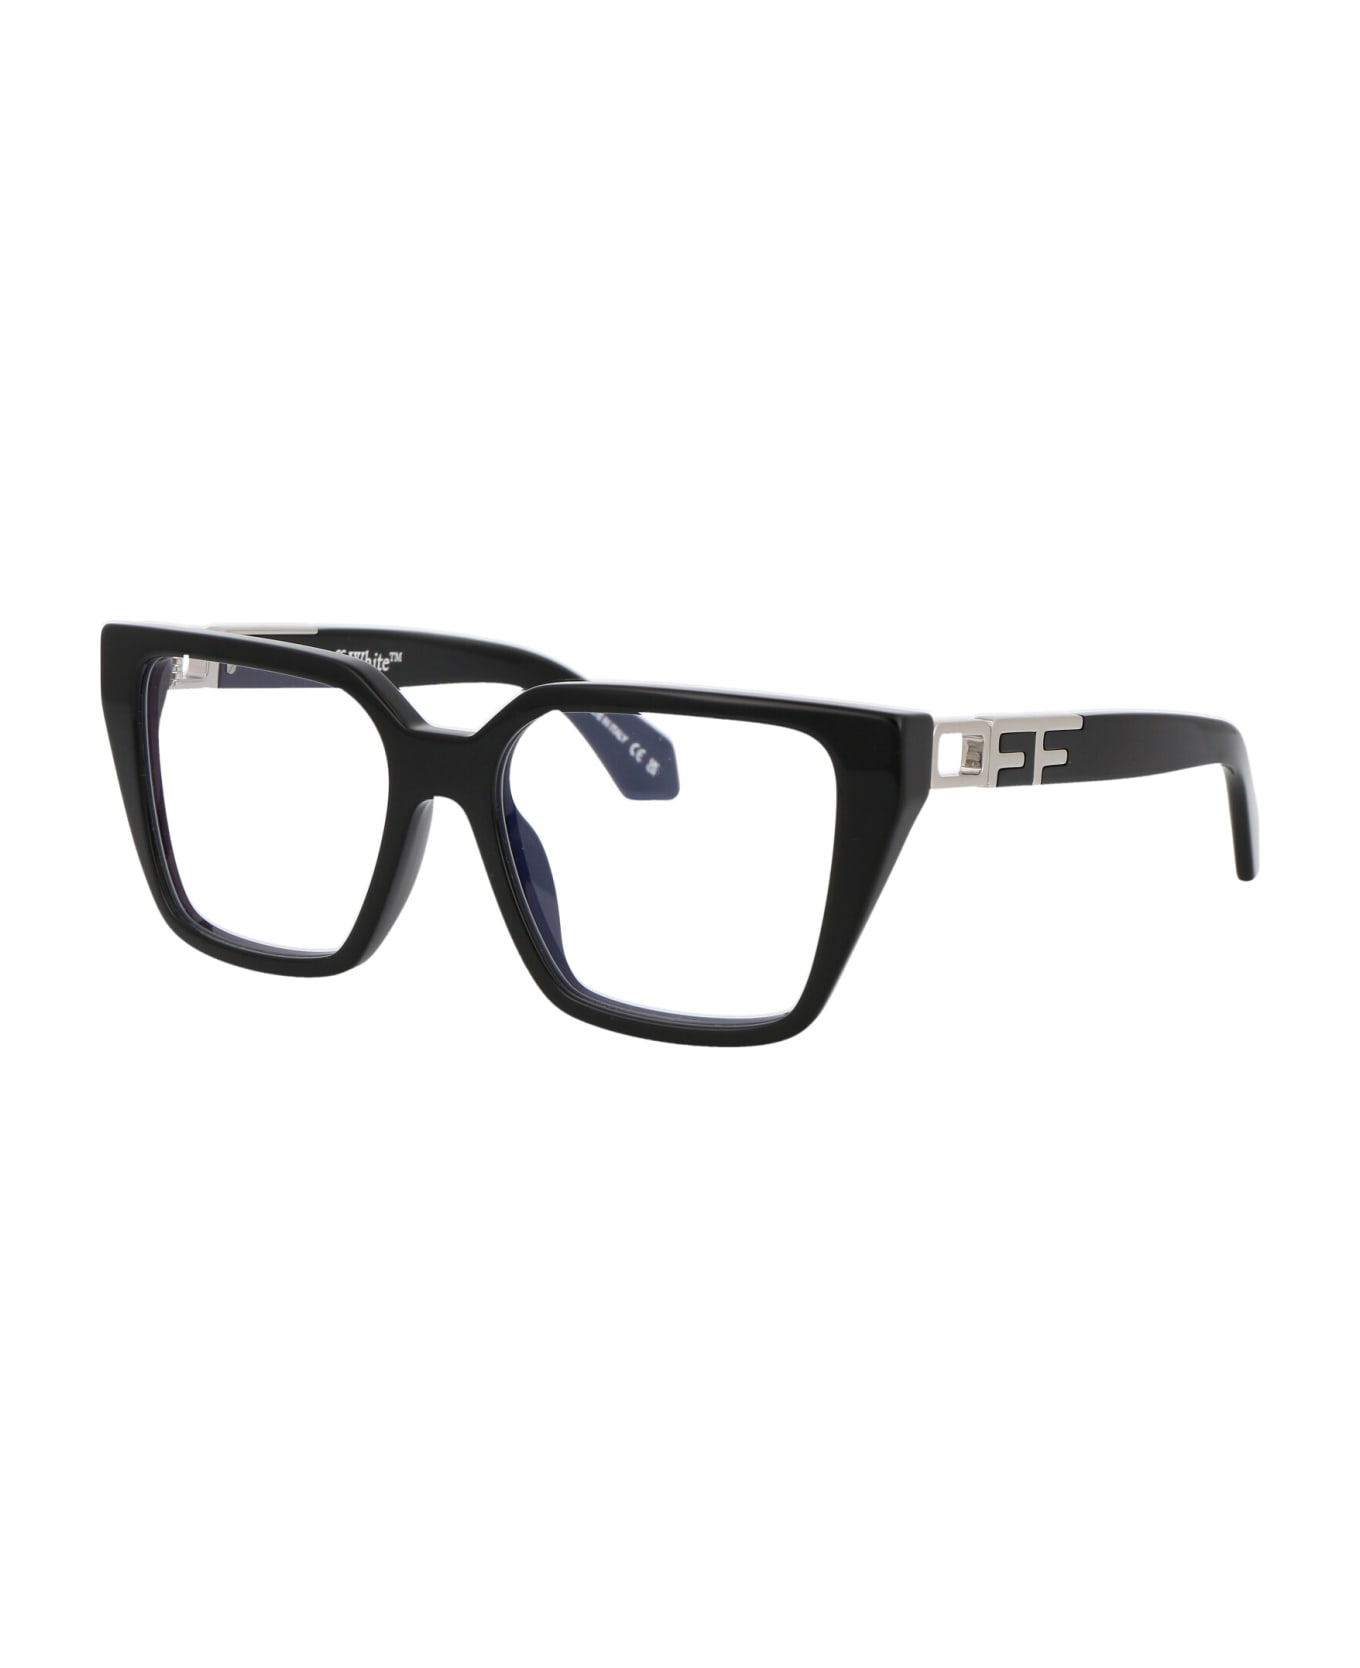 Off-White Optical Style 29 Glasses - 1000 BLACK BLUE BLOCK アイウェア